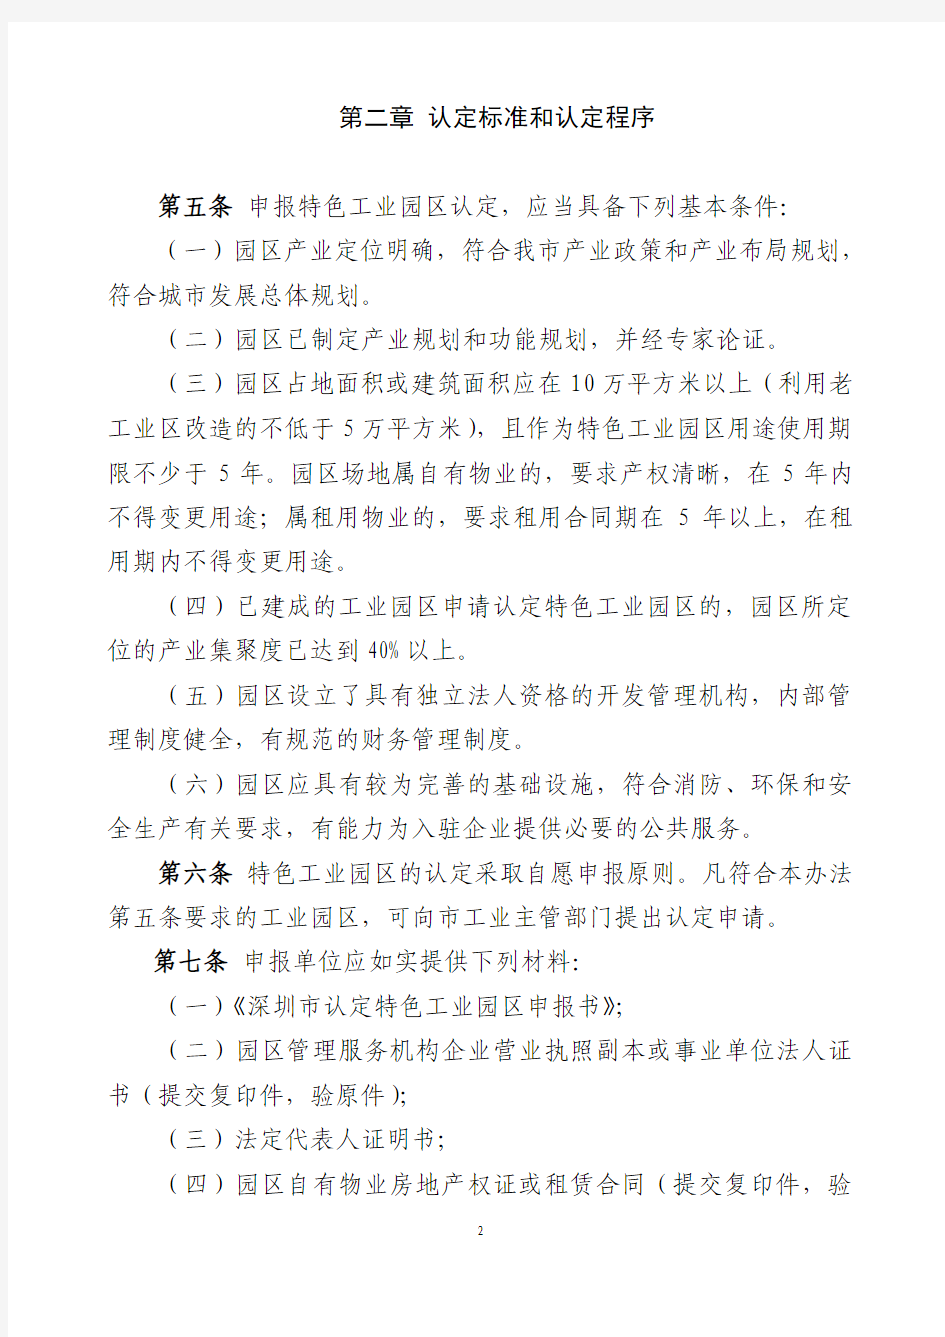 深圳市特色工业园区认定管理办法